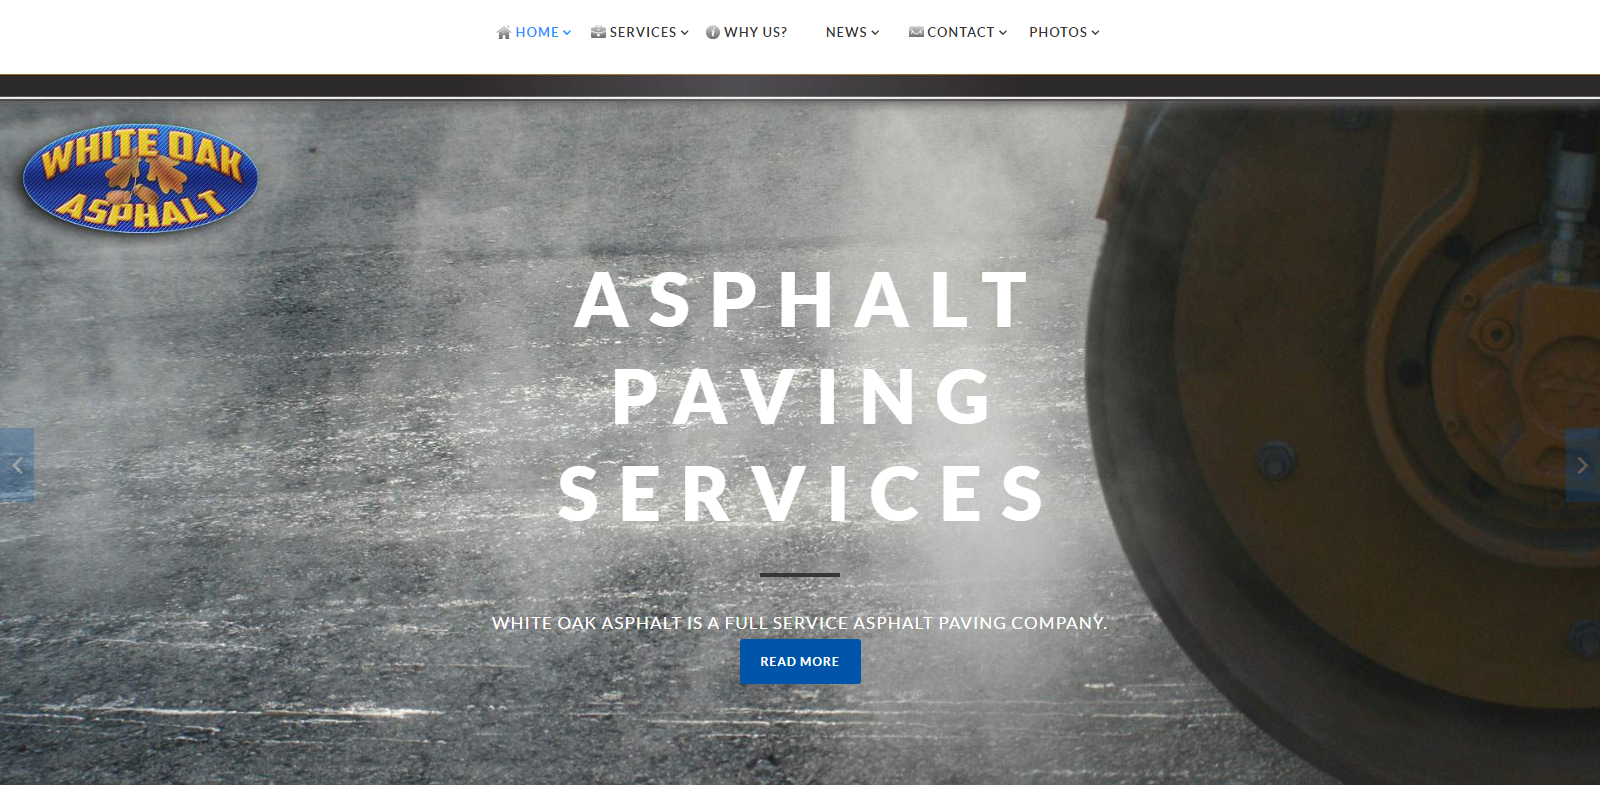 White Oak Asphalt: Website Design